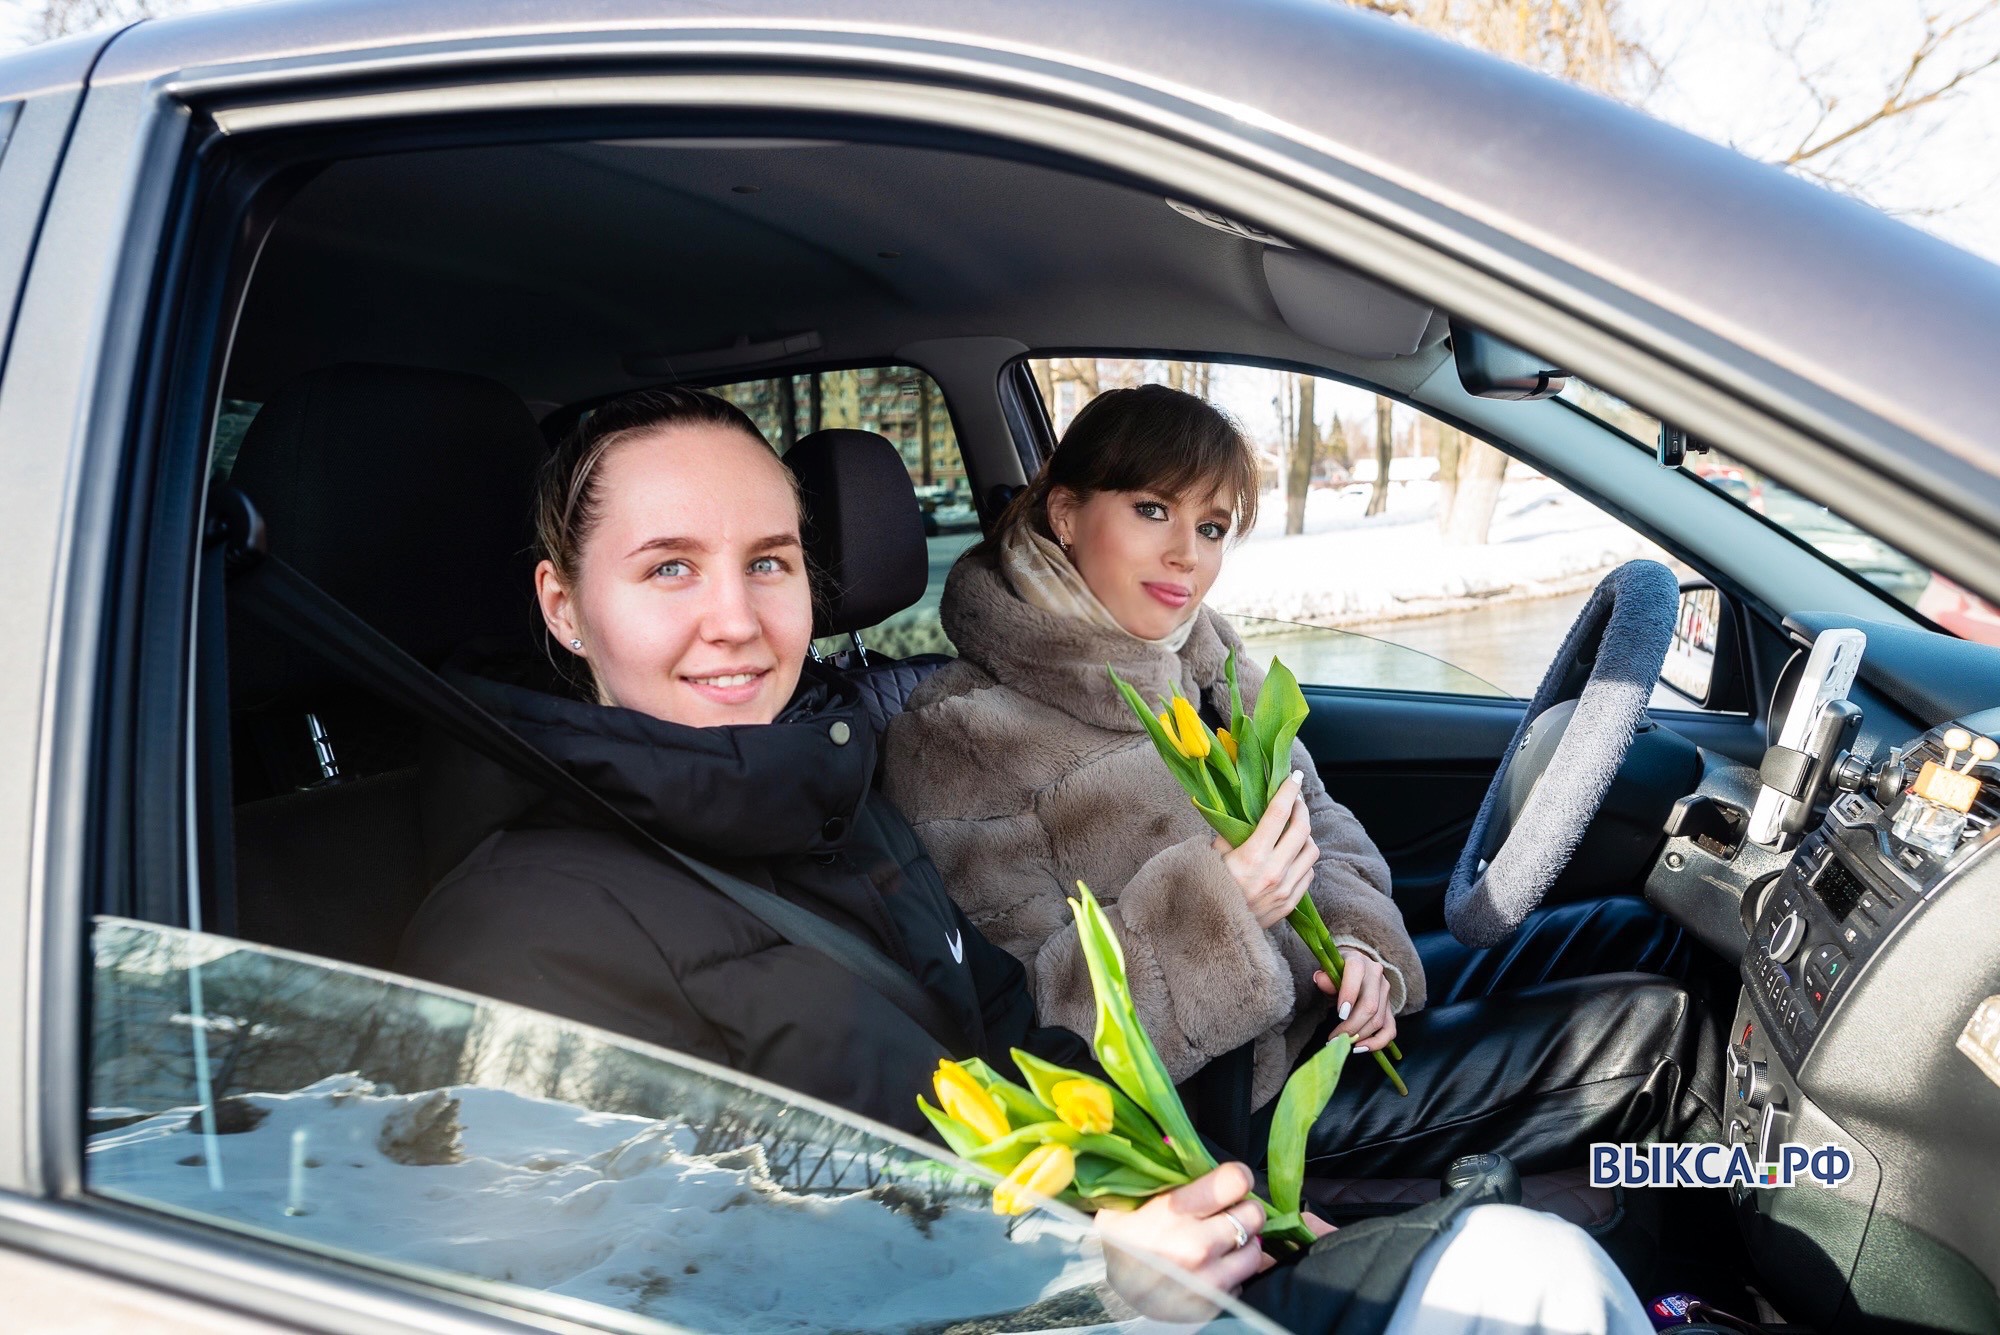 Остановитесь, вам цветы! Женщин-водителей и пассажиров поздравили с 8 Марта 📸